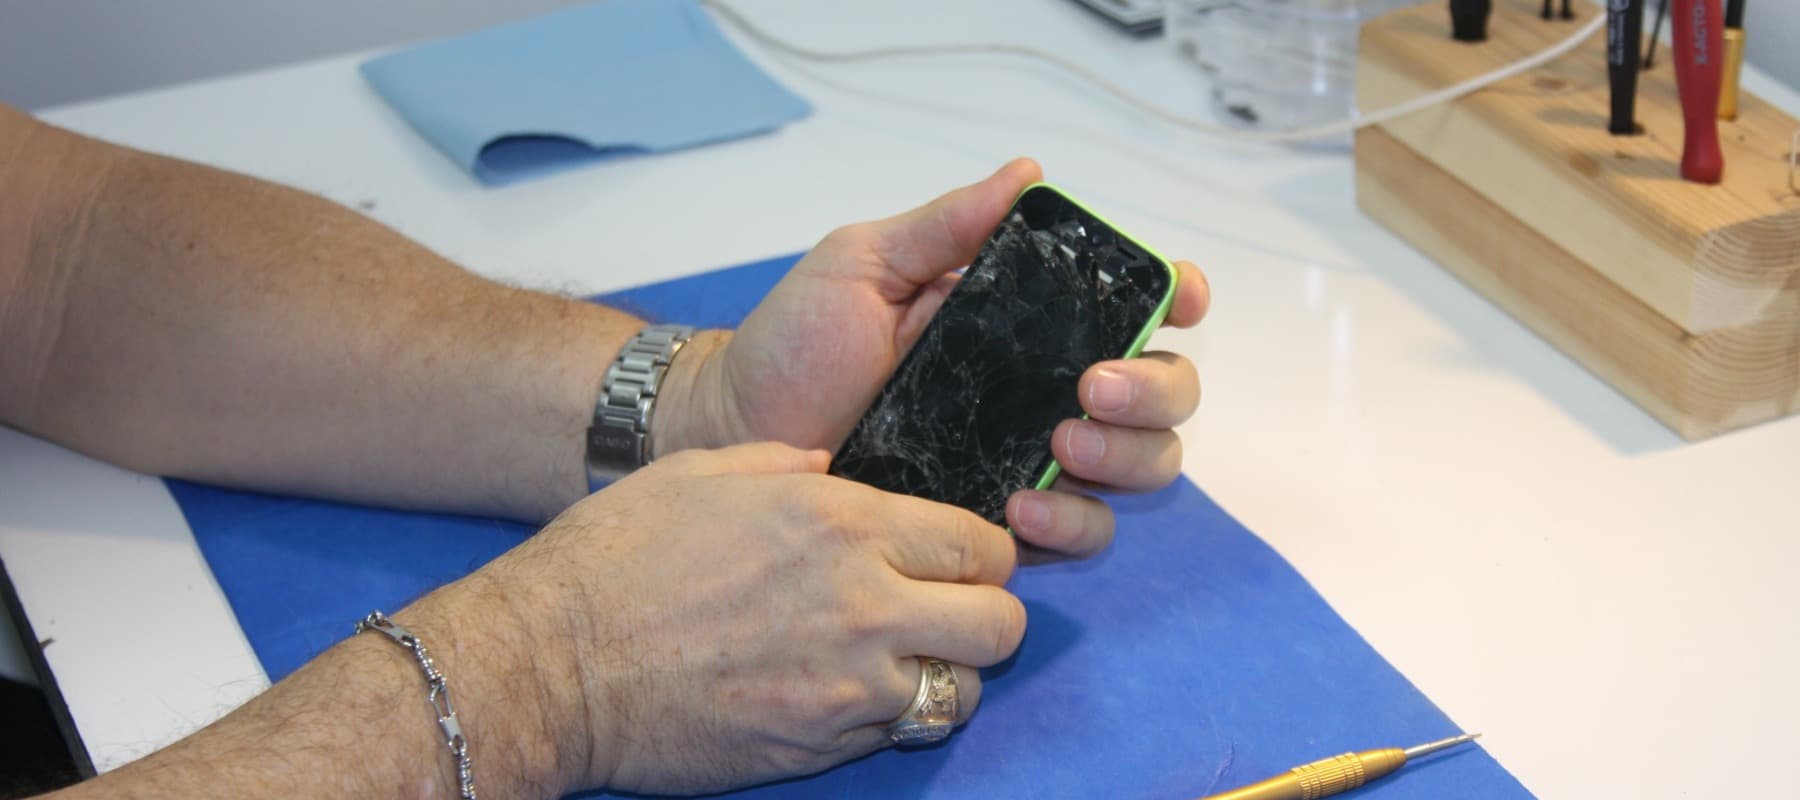 Фото новости: "Samsung начала продавать наборы для самостоятельного ремонта смартфонов"